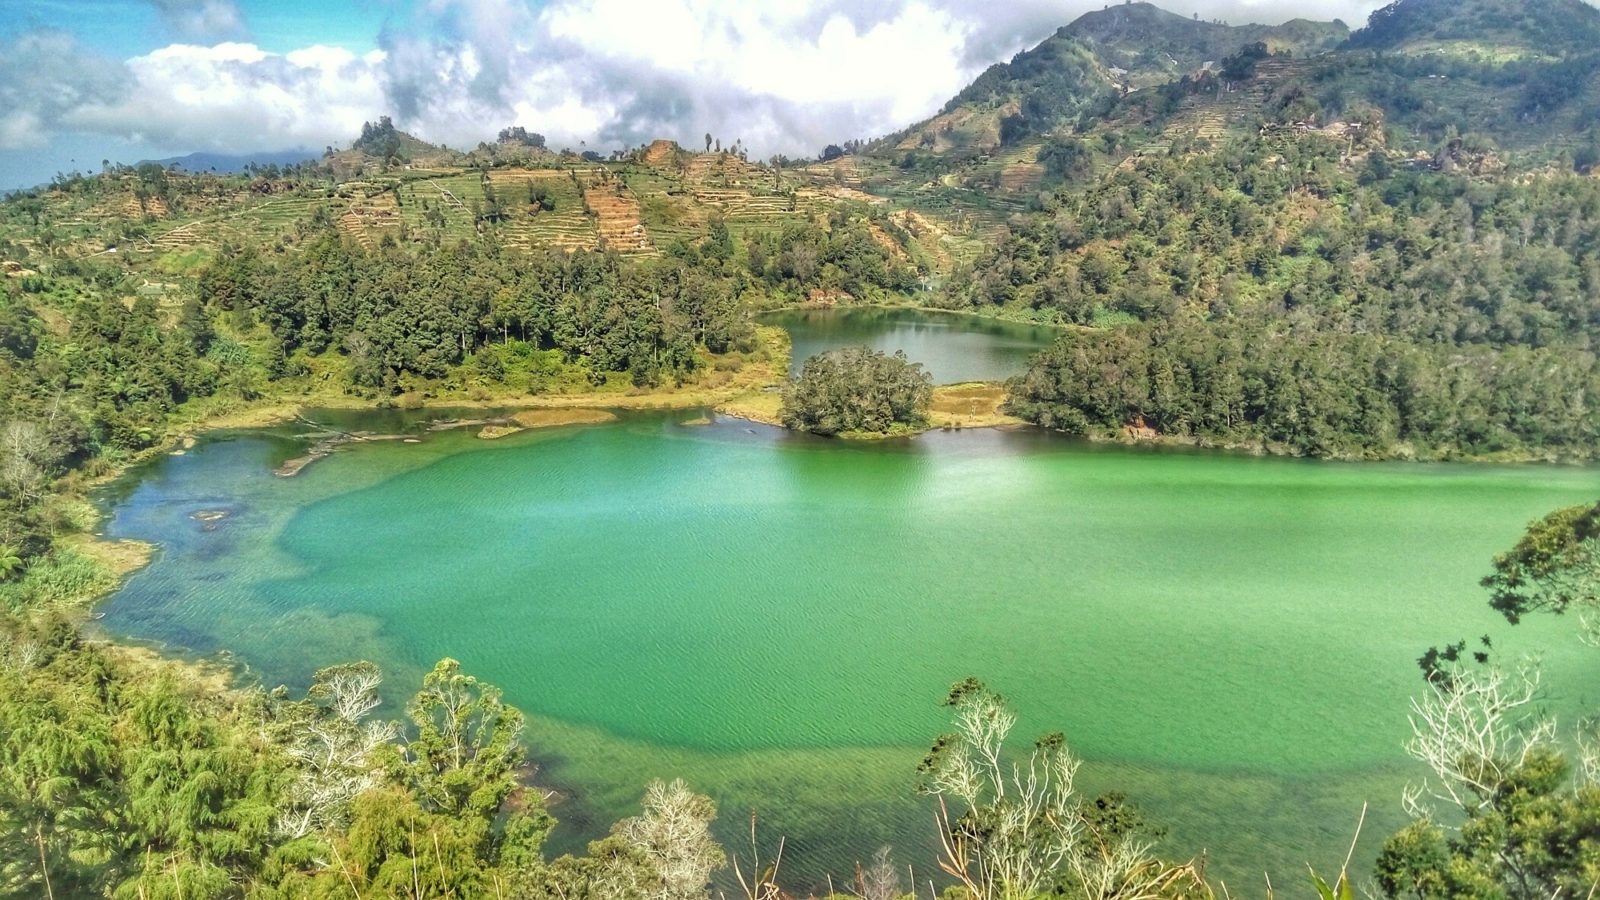 Telaga warna terletak di danau Telaga Warna